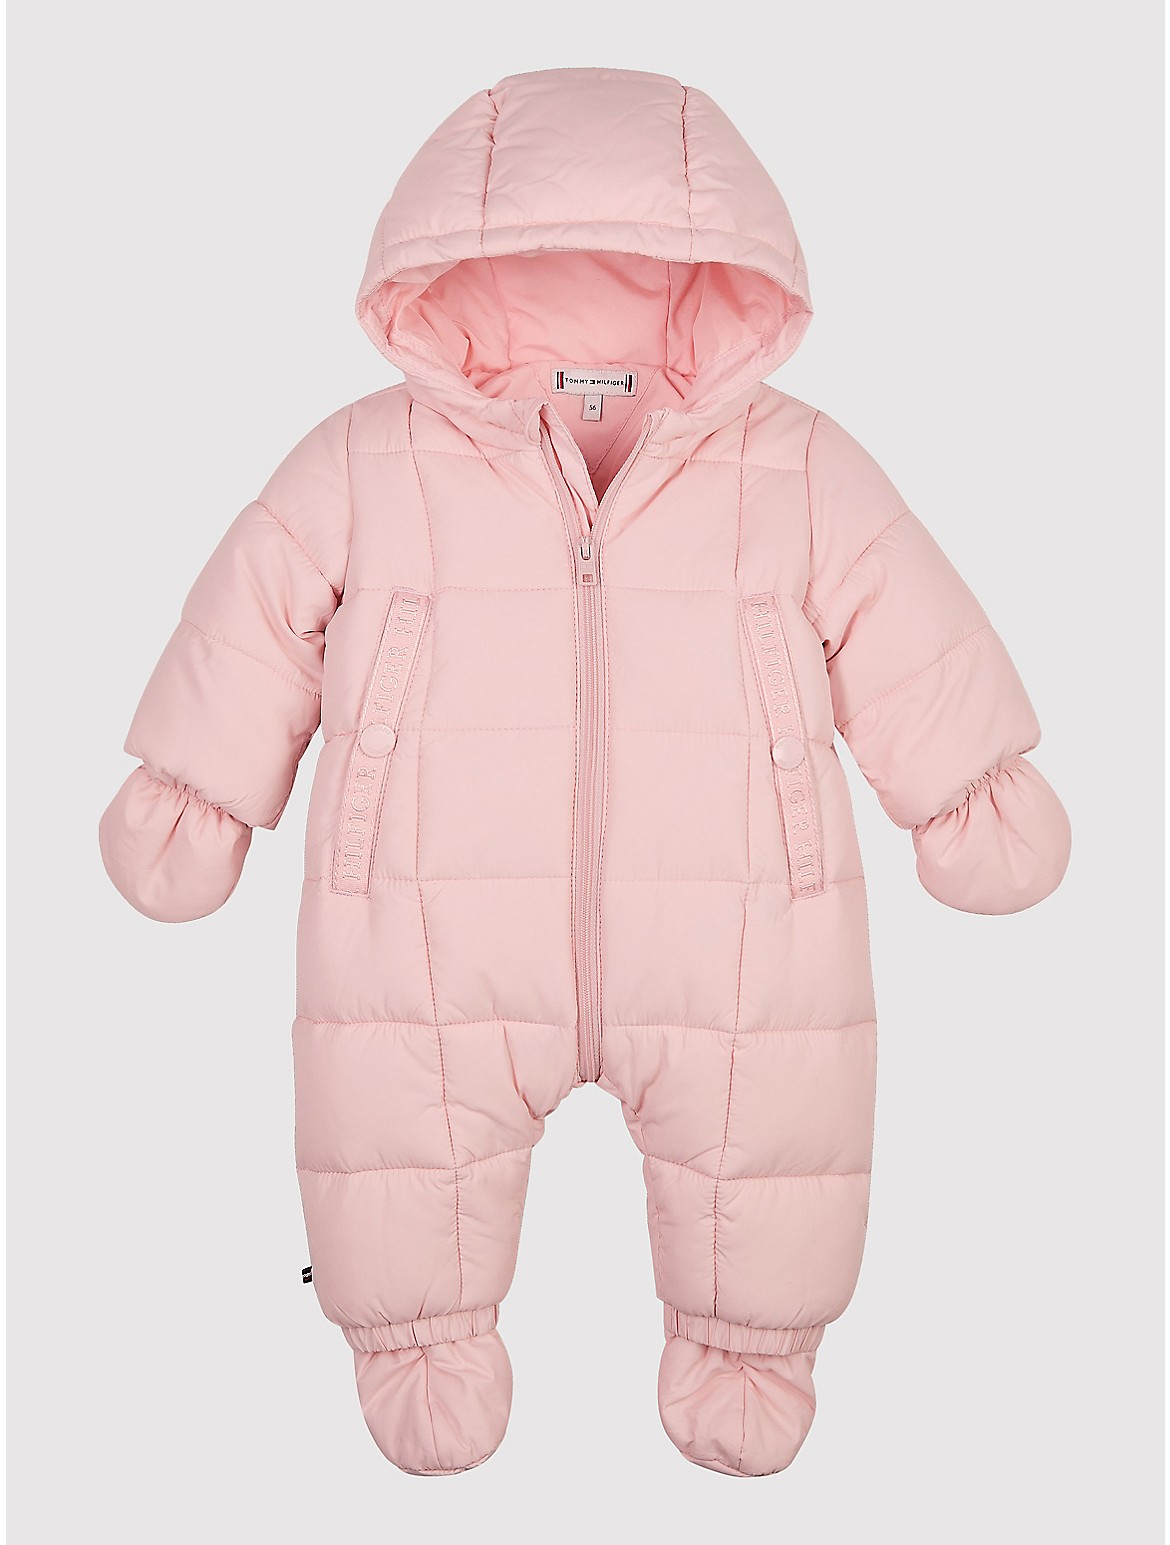 Tommy Hilfiger Babies' Ski Suit Set - Pink - 0-3M